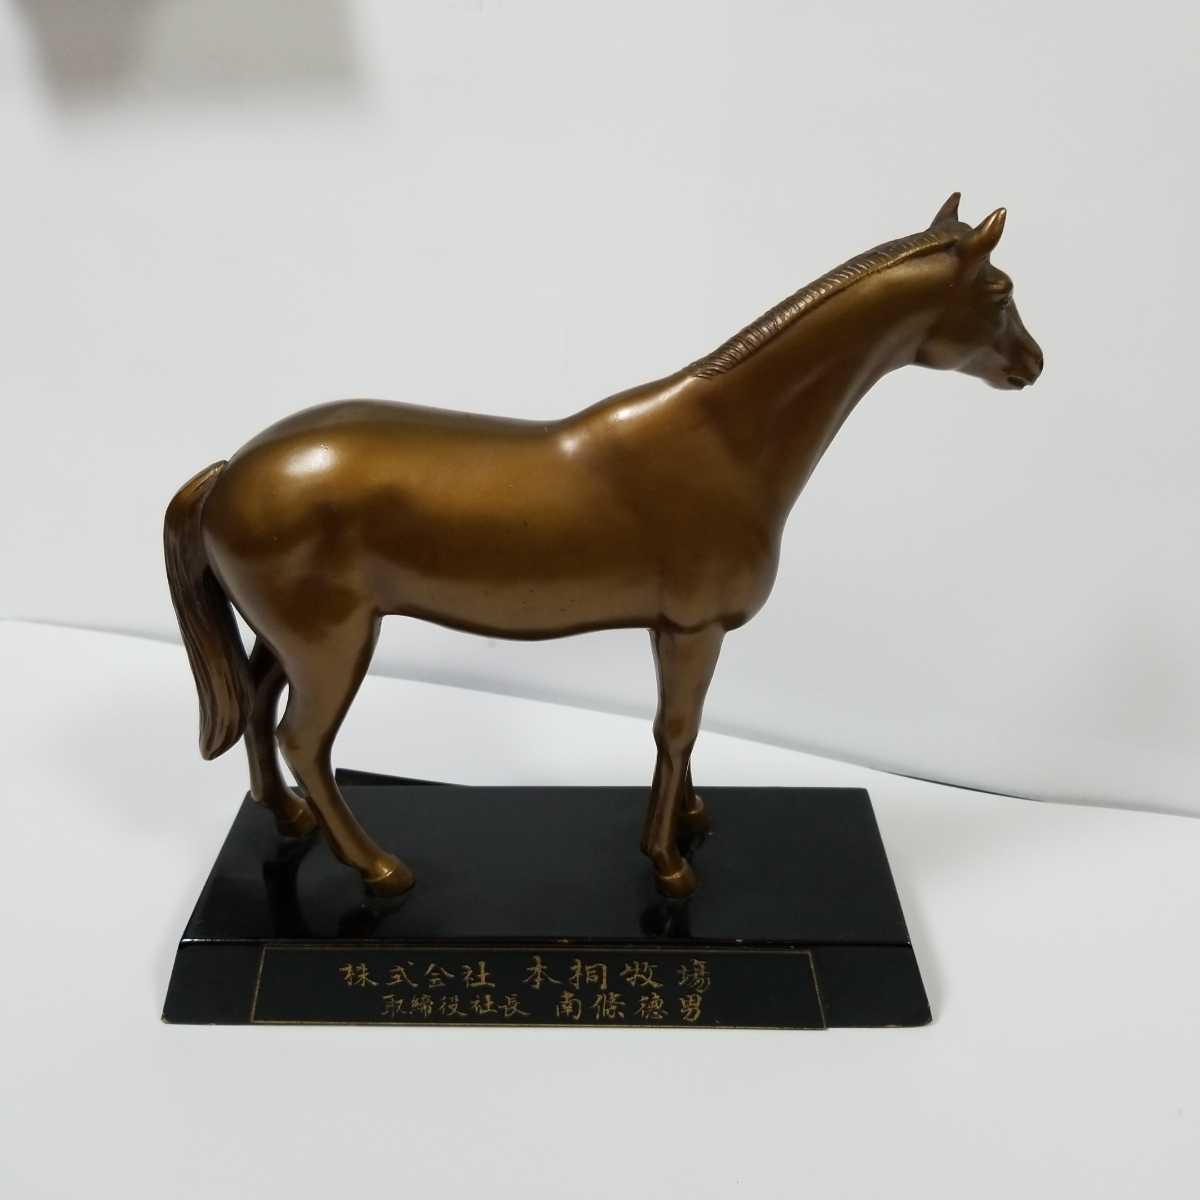 馬の銅像 チャイナロック号 本桐牧場 記念品 ヴィンテージ物 競馬記念